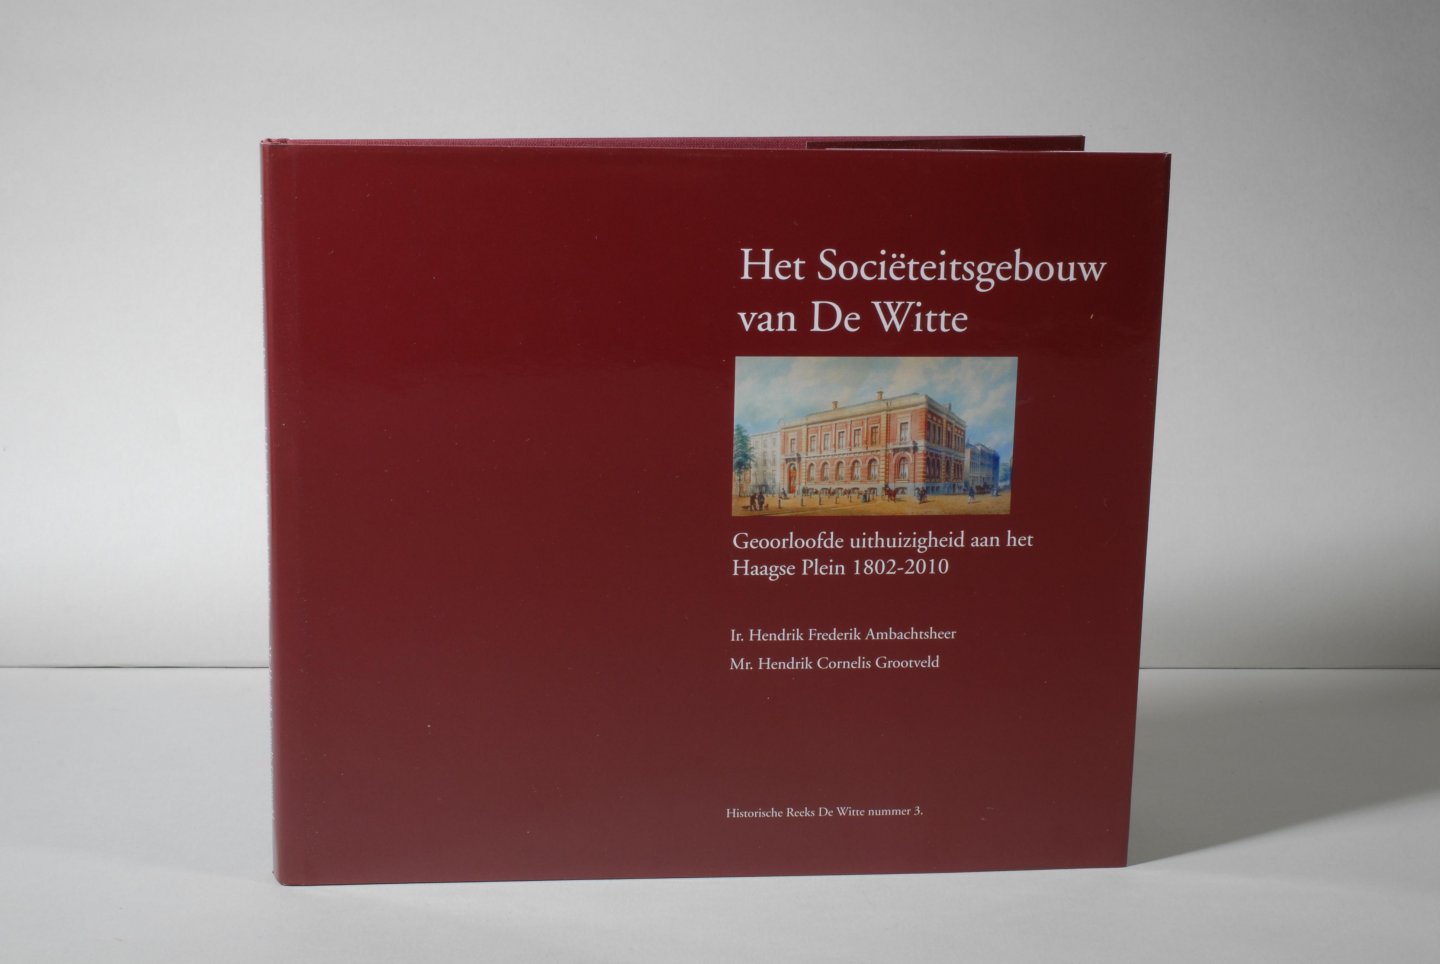 Henk AMBACHTSHEER (et al.) - Het Sociëteitsgebouw van De Witte. Geoorloofde uithuizigheid aan het Haagse Plein 1802-2010. Historische Reeks De Witte nummer 3. Toegevoegd folder.